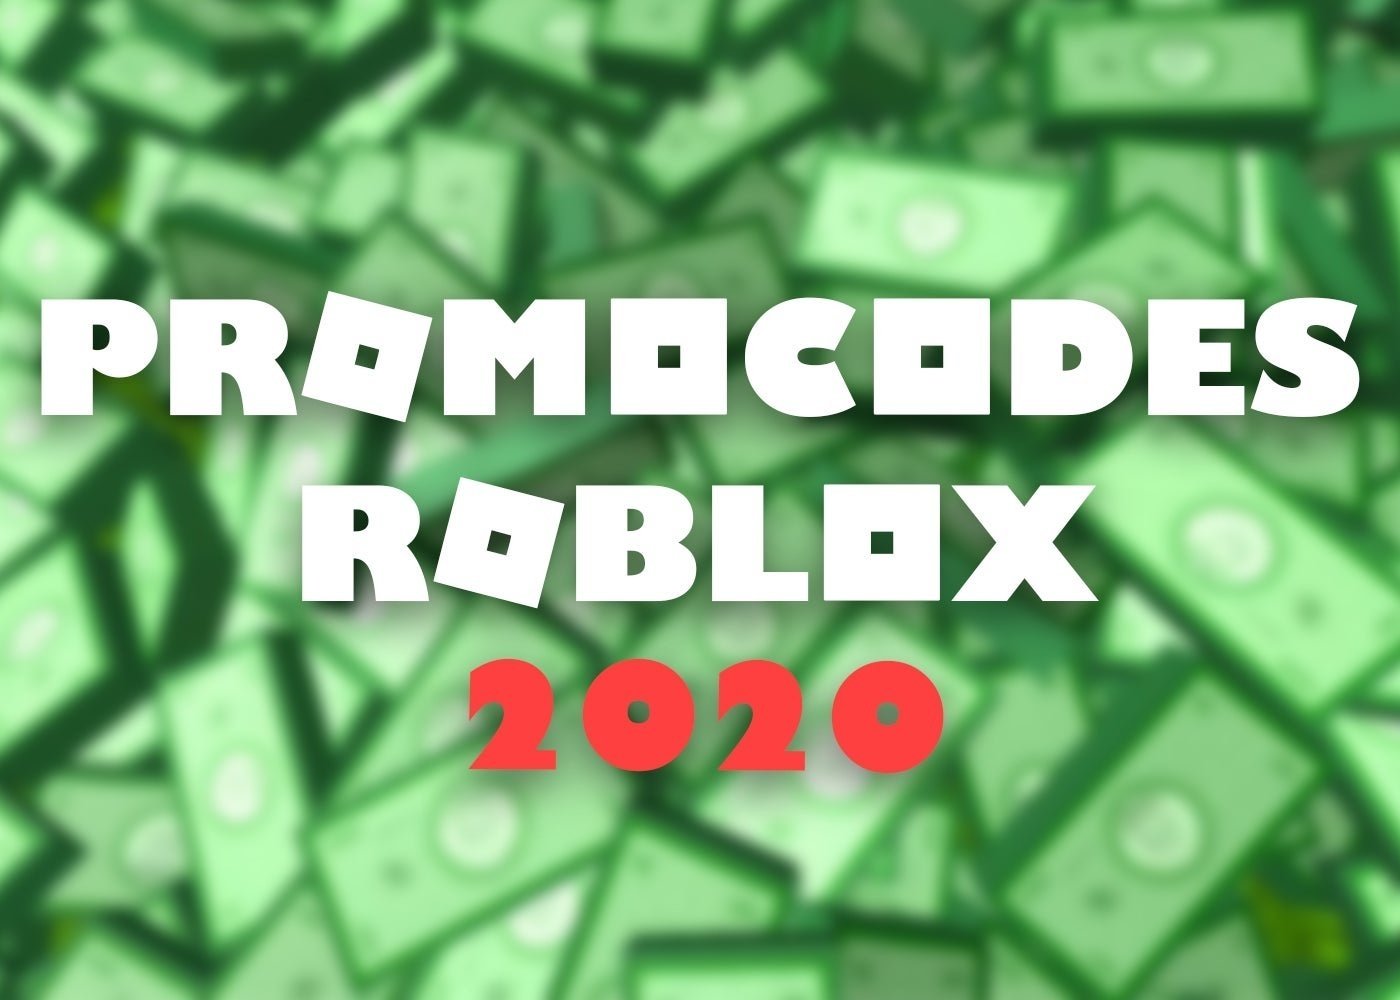 Promocodes De Roblox En Octubre 2020 Lista De Codigos Completa - los nuevos promocodes de roblox 2020